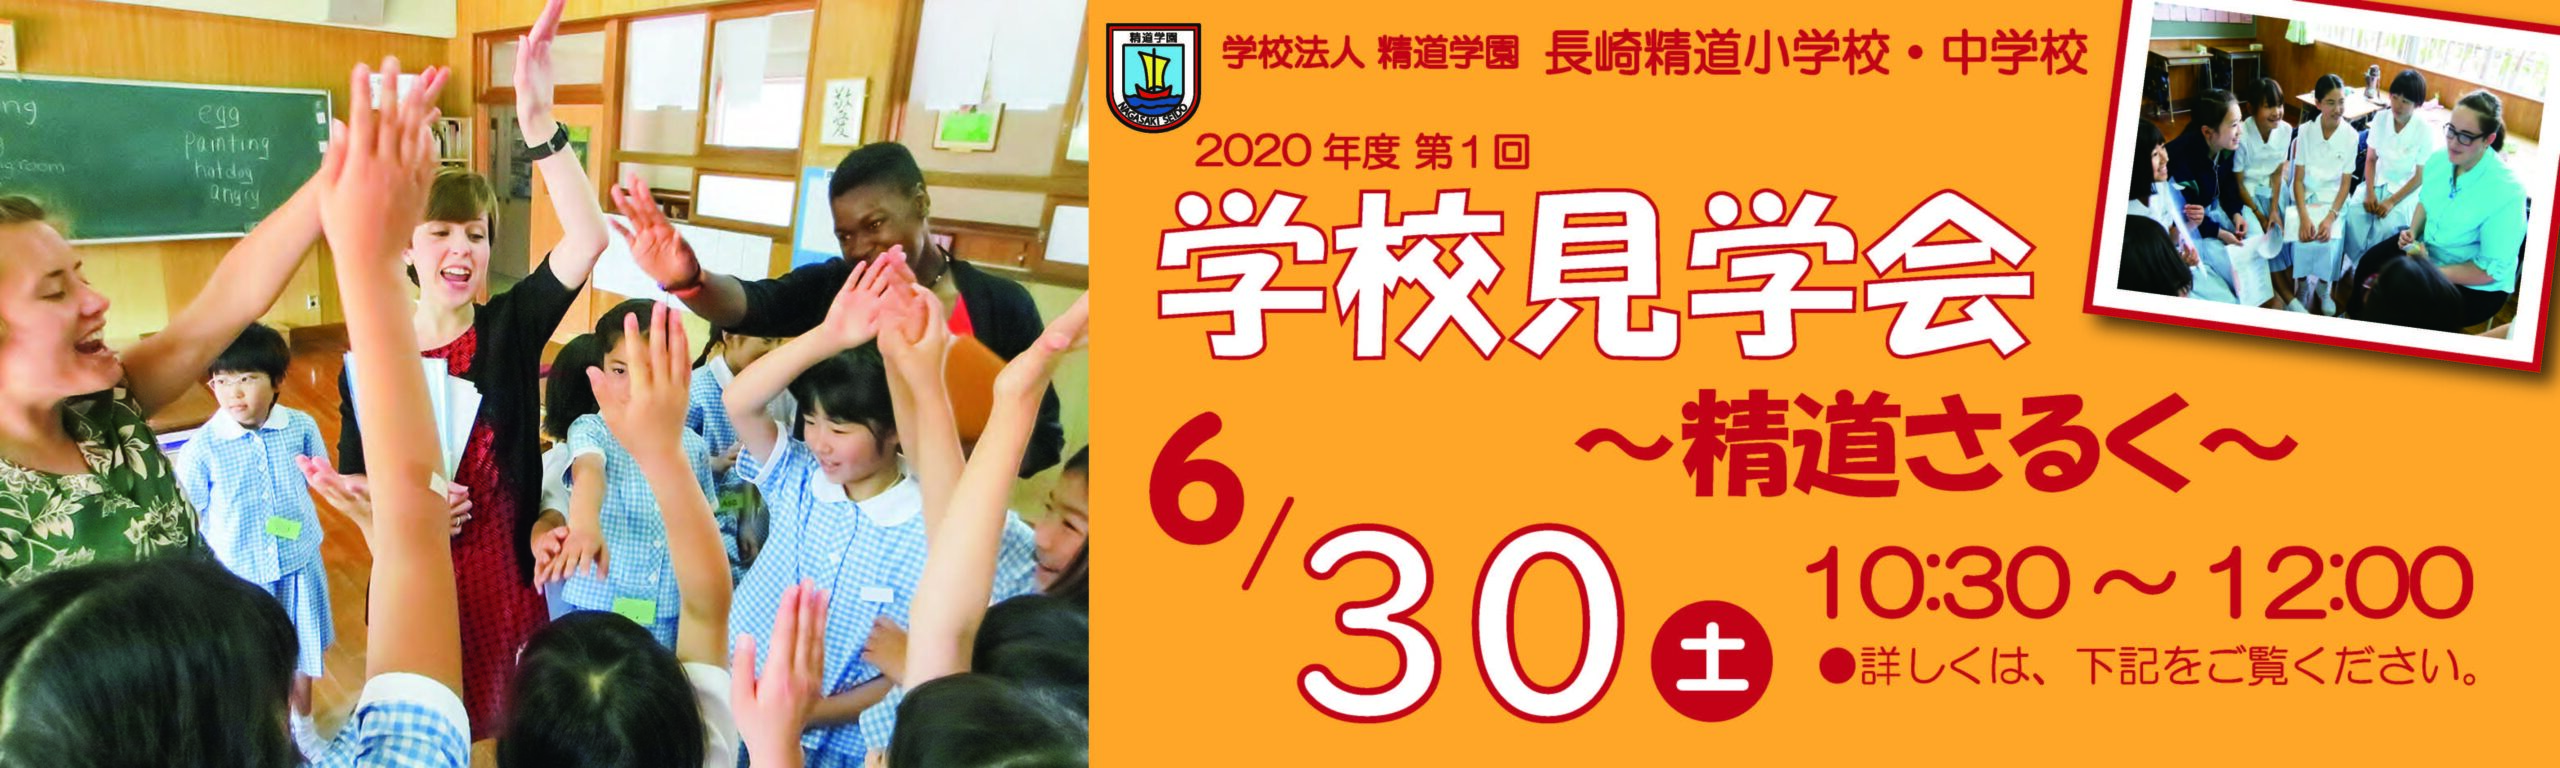 学校見学会「精道さるく」20200630